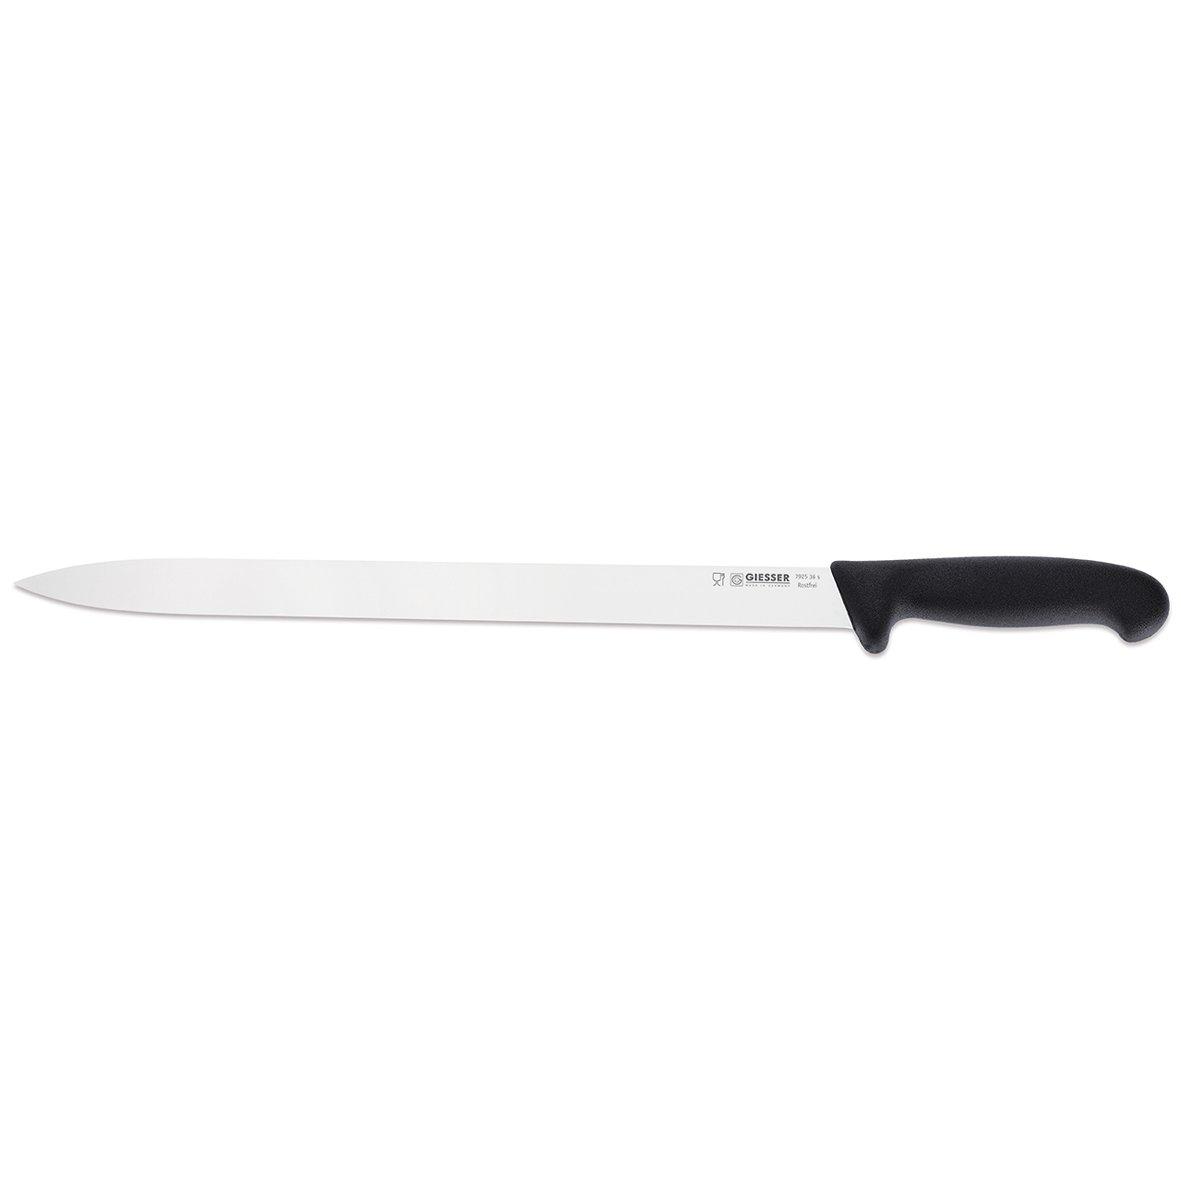 Нож для салями 7925